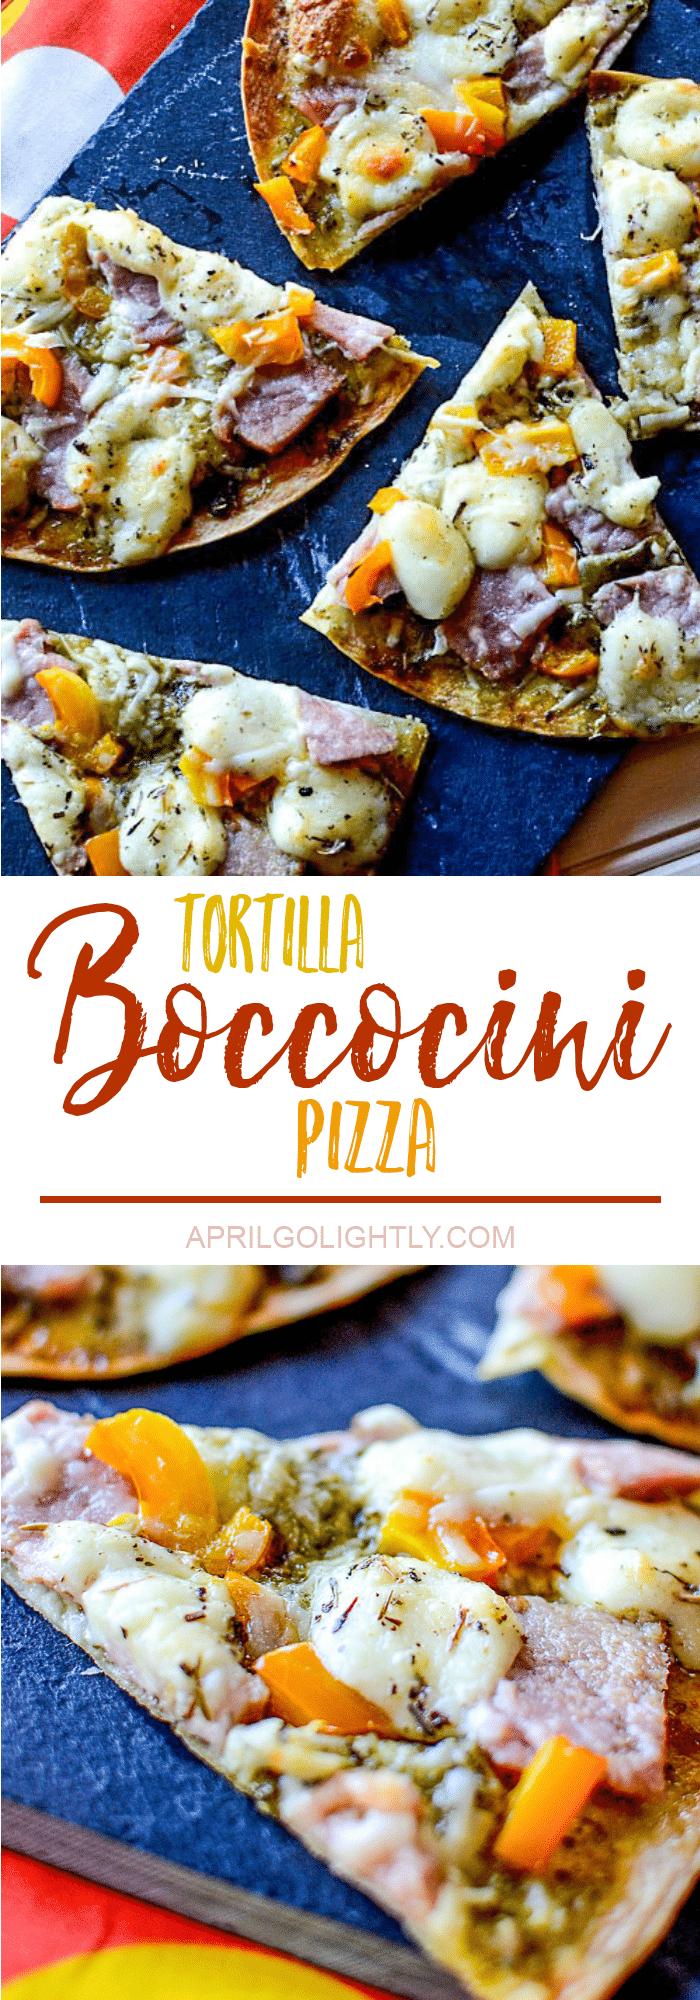 Bocconcini-tortilla-pizza-recipe-